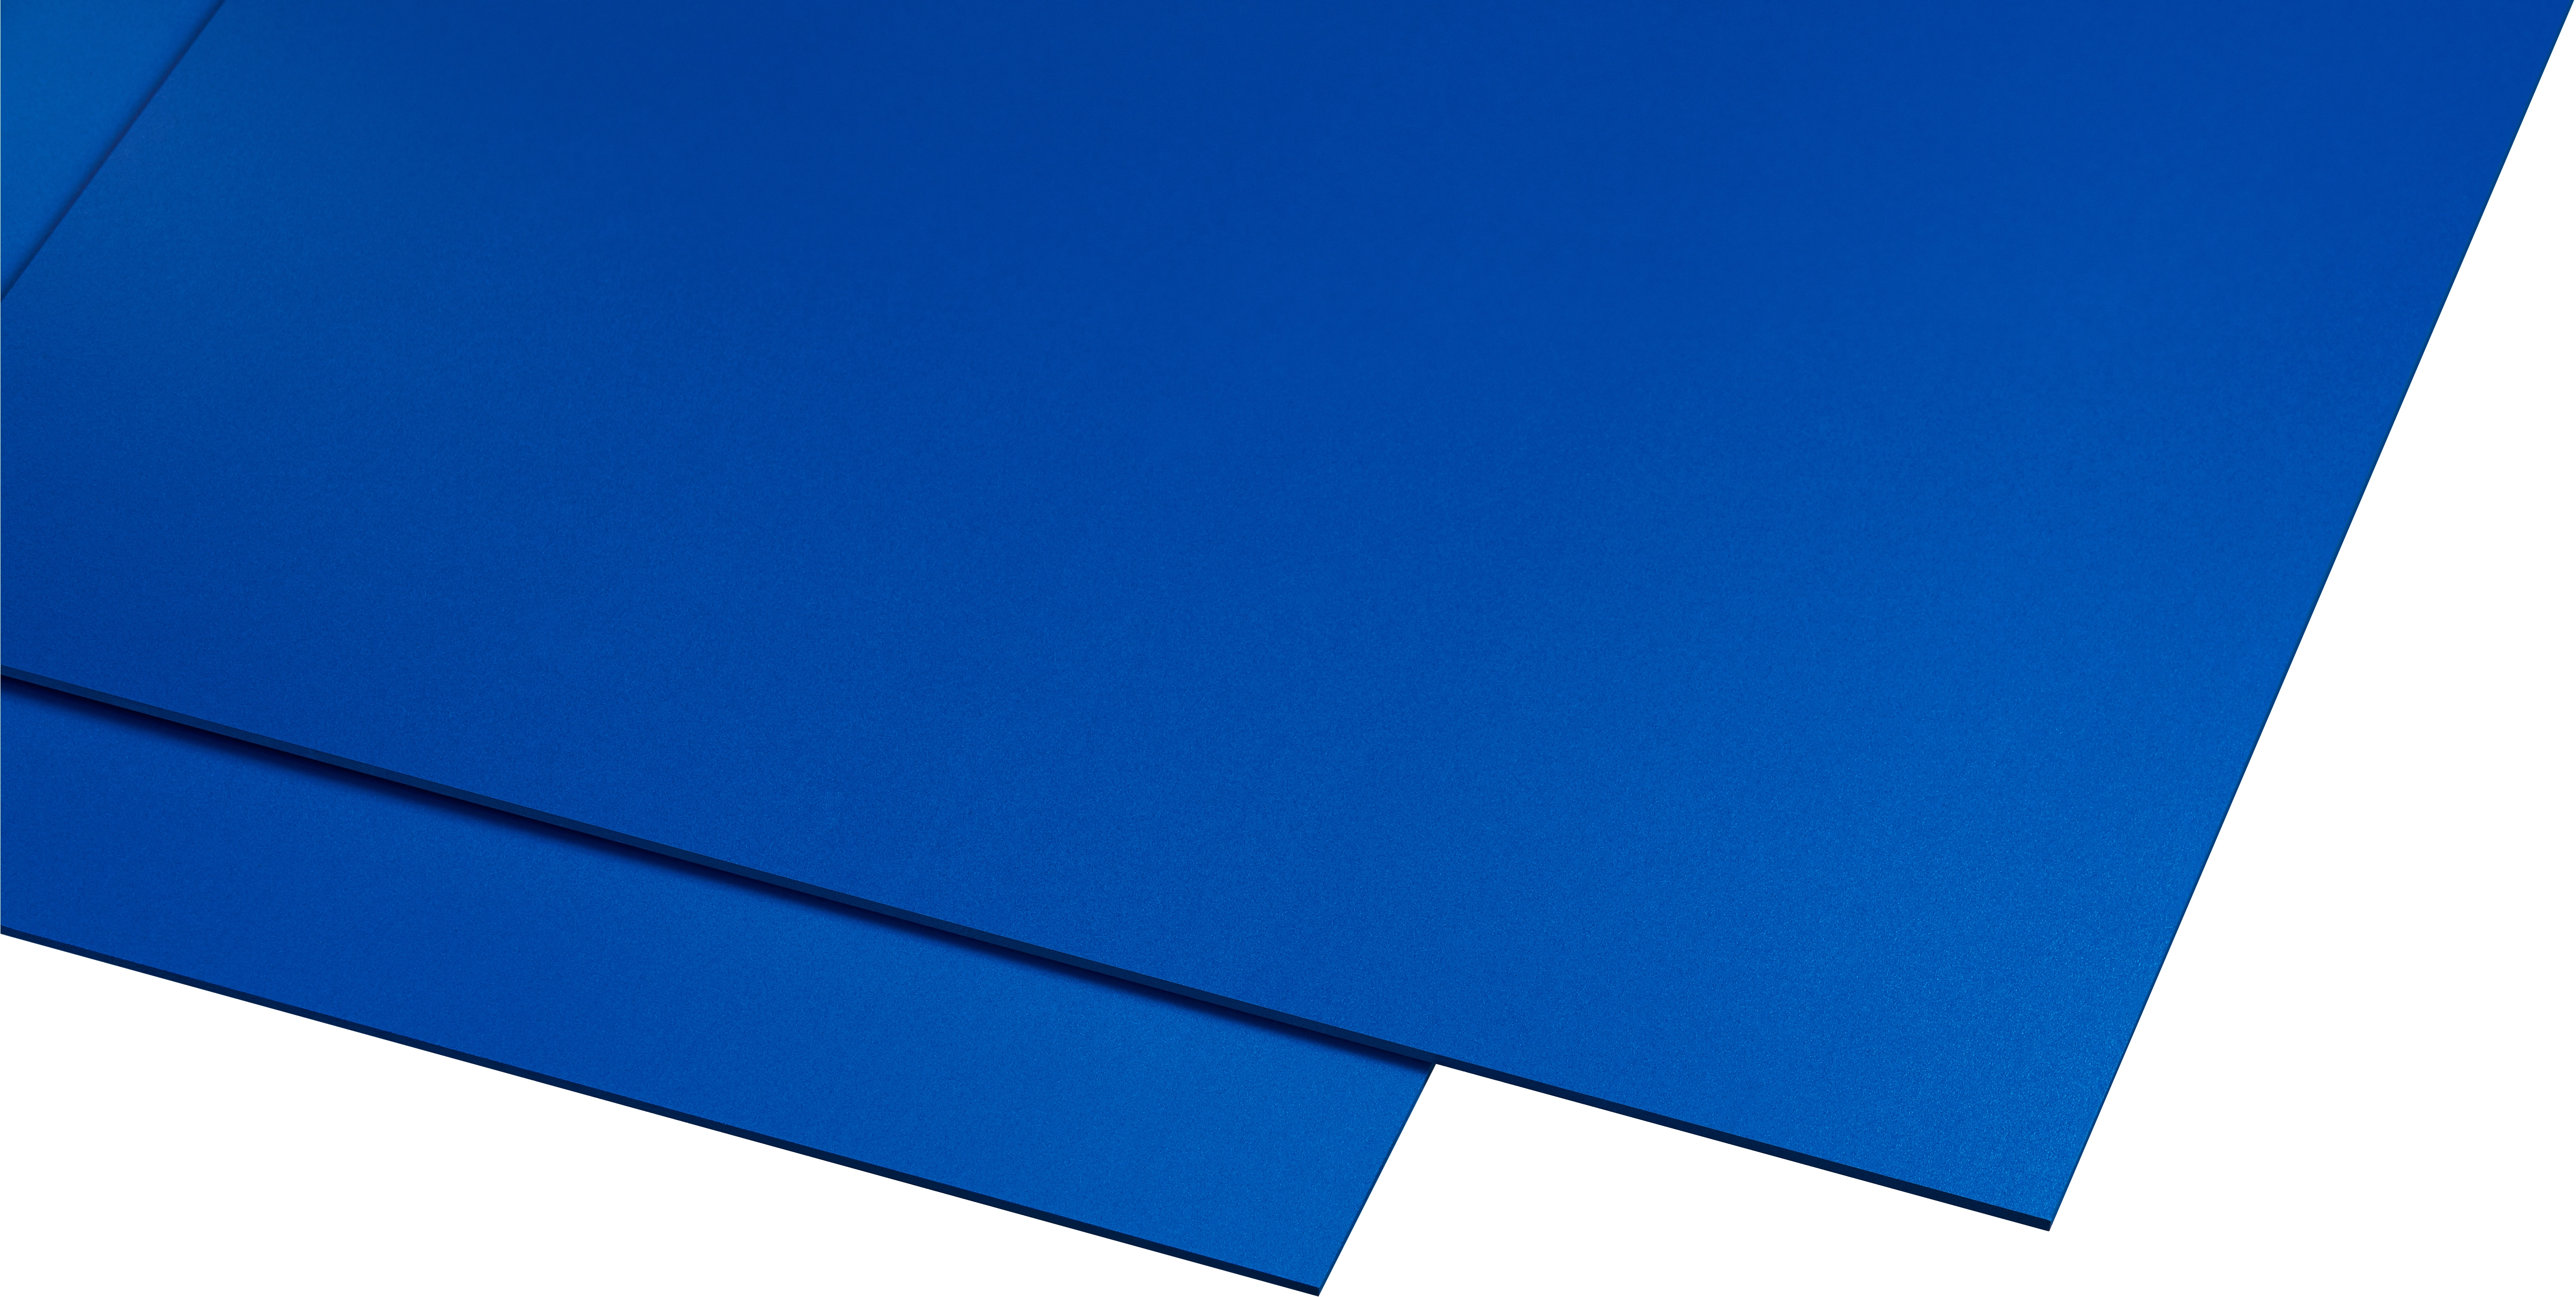 Kunststoffplatte Guttagliss Hobbycolor Blau 50 cm x 25 cm kaufen bei OBI